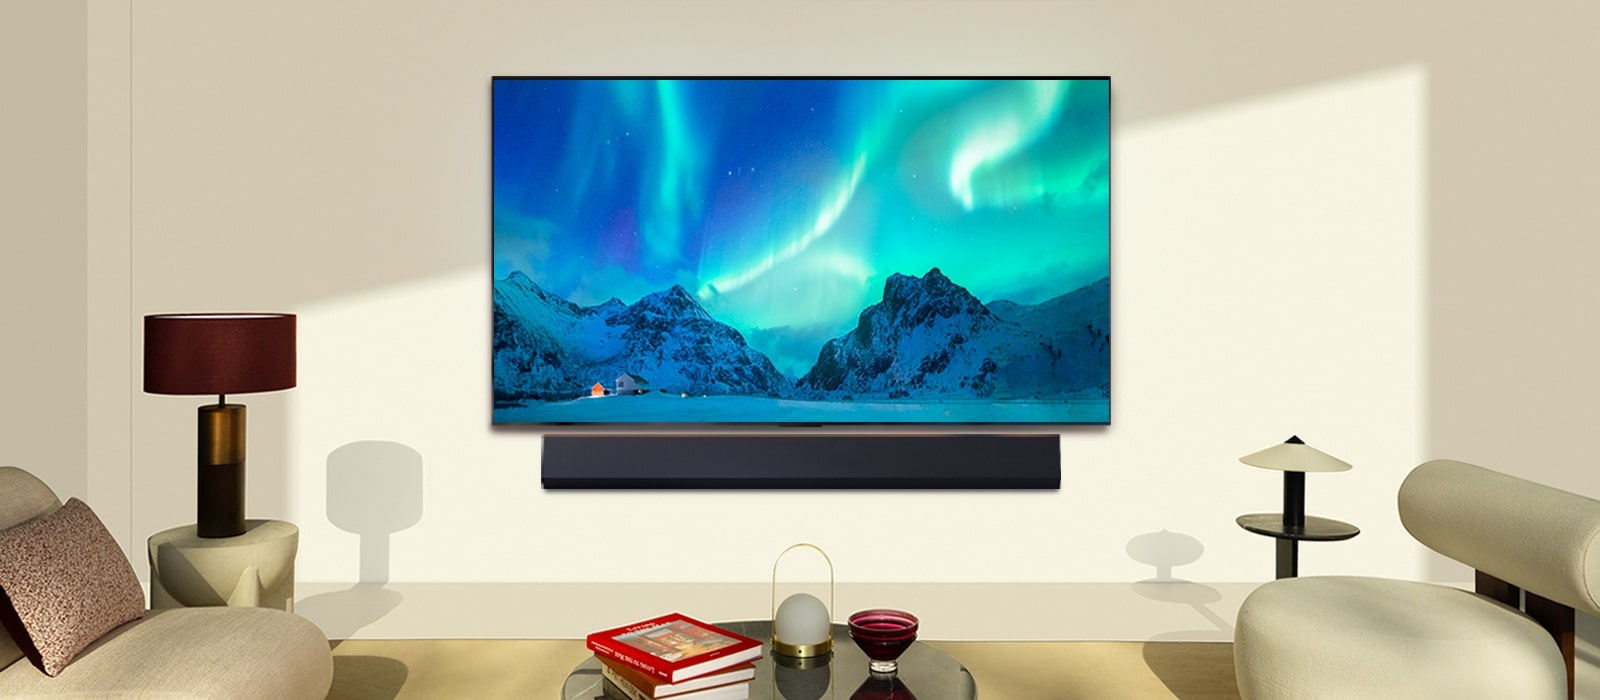 Μια LG OLED TV και ένα LG Soundbar σε ένα σύγχρονο σαλόνι την ημέρα. Εμφανίζεται μια εικόνα της οθόνης του Βόρειου Σέλας με τα ιδανικά επίπεδα φωτεινότητας.